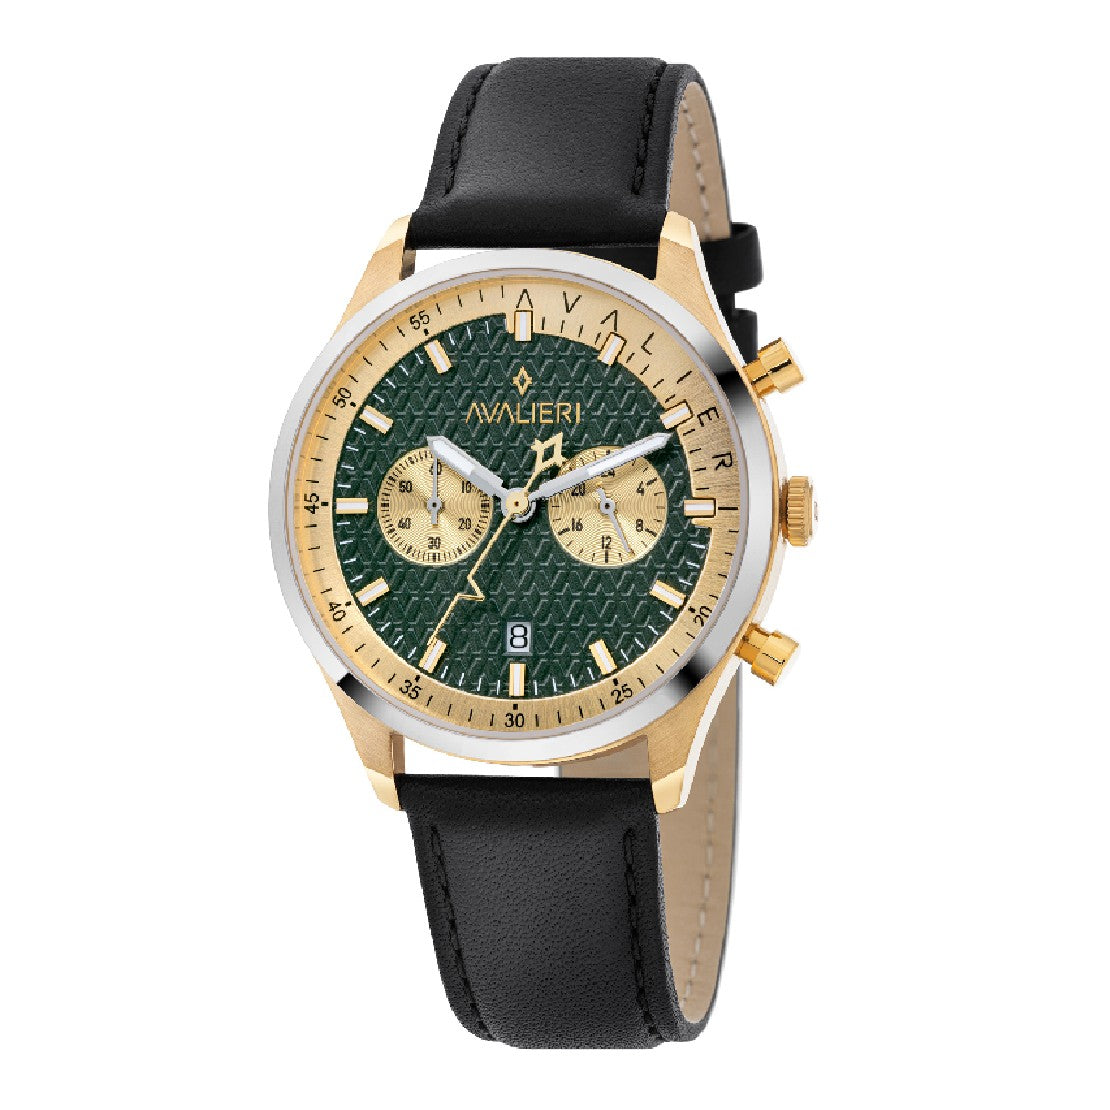 Avalieri Men's Quartz Green Dial Watch - AV-2367B